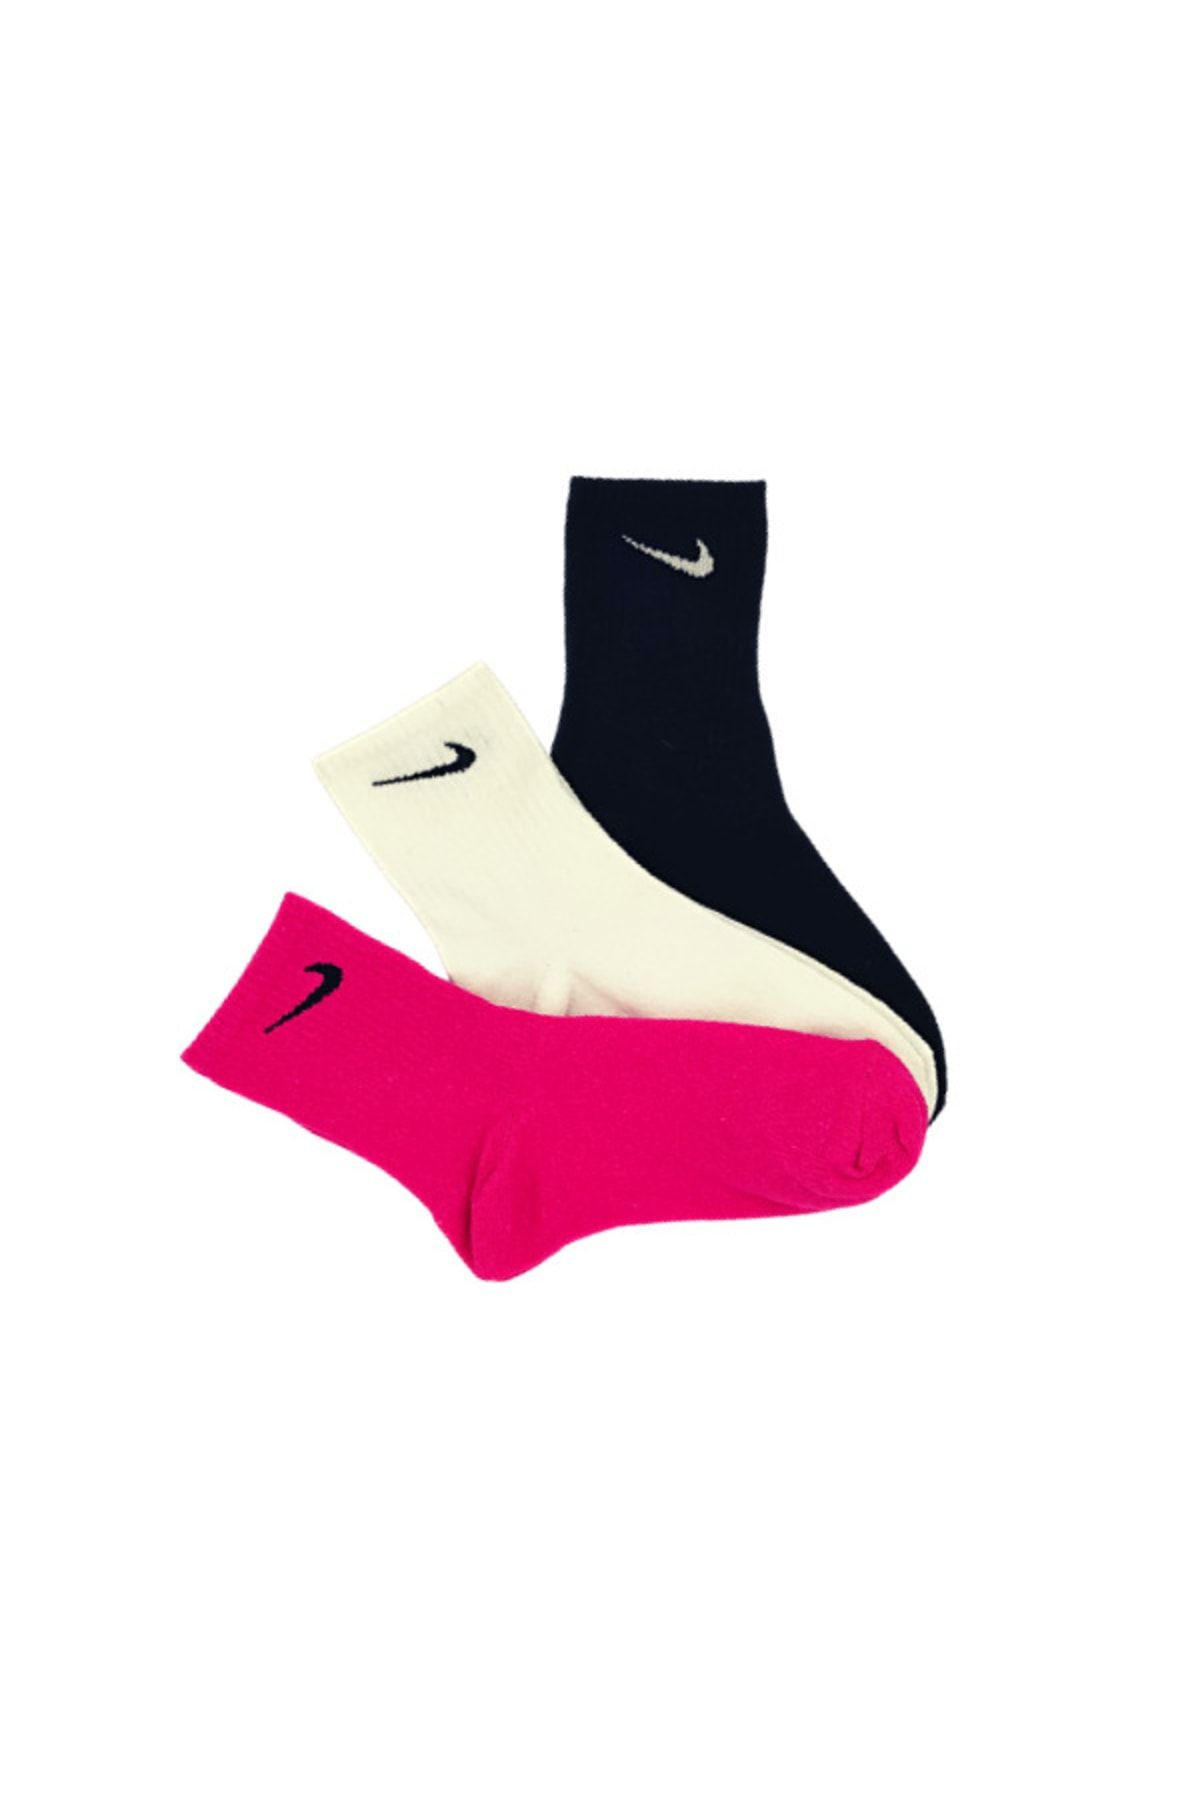 Genel Markalar 3'lü Unisex Siyah Beyaz Pembe Antrenman Spor Tenis Futbol Basketbol Koşu Soket Çorap Seti